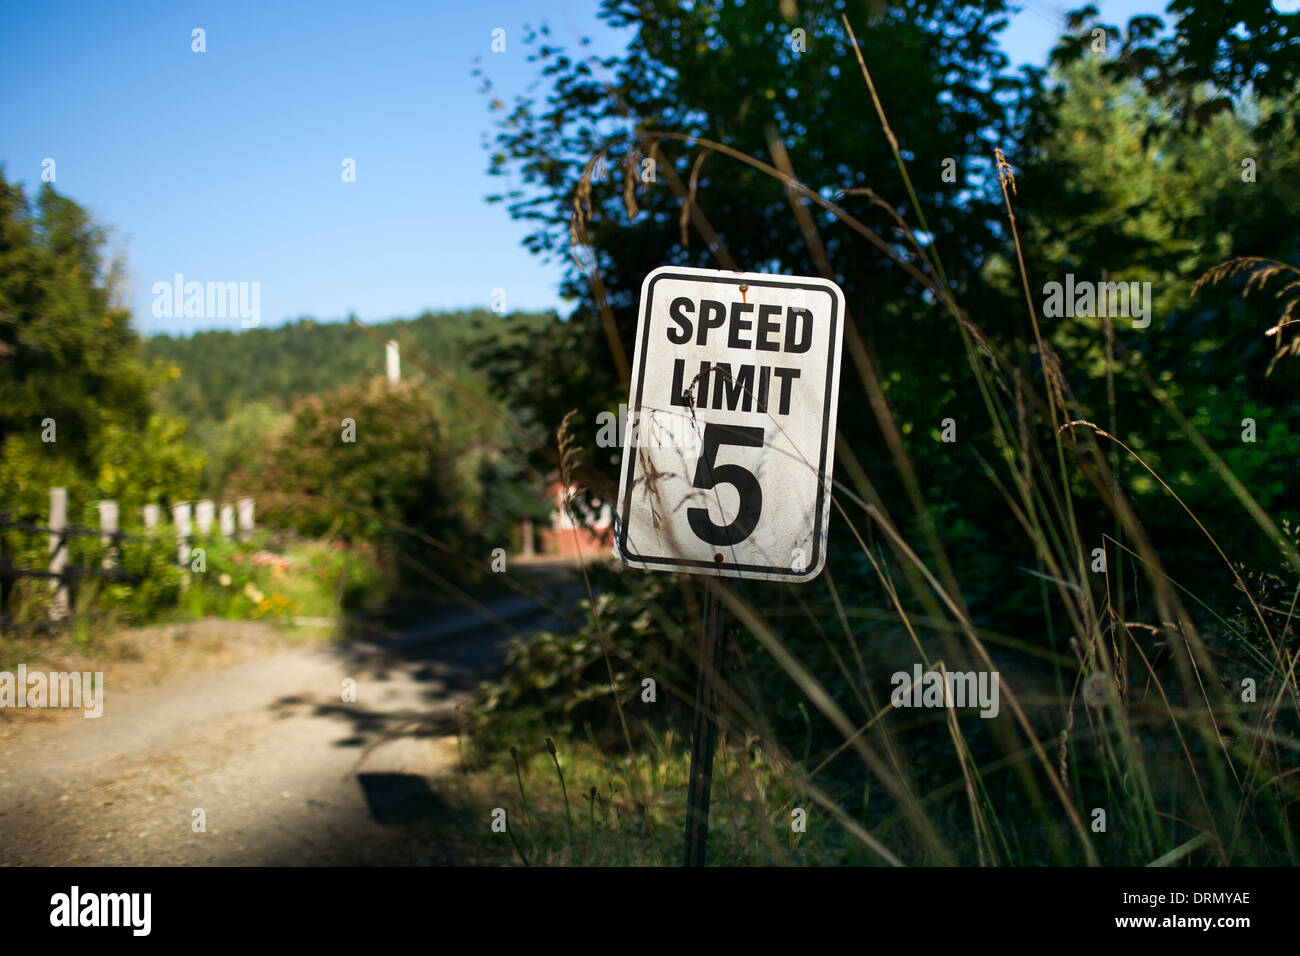 Foto von Tempolimit Schild in Tahuya, Washington State.  Aufgenommen während des Tages, hell erleuchtet, geringe Schärfentiefe. Stockfoto